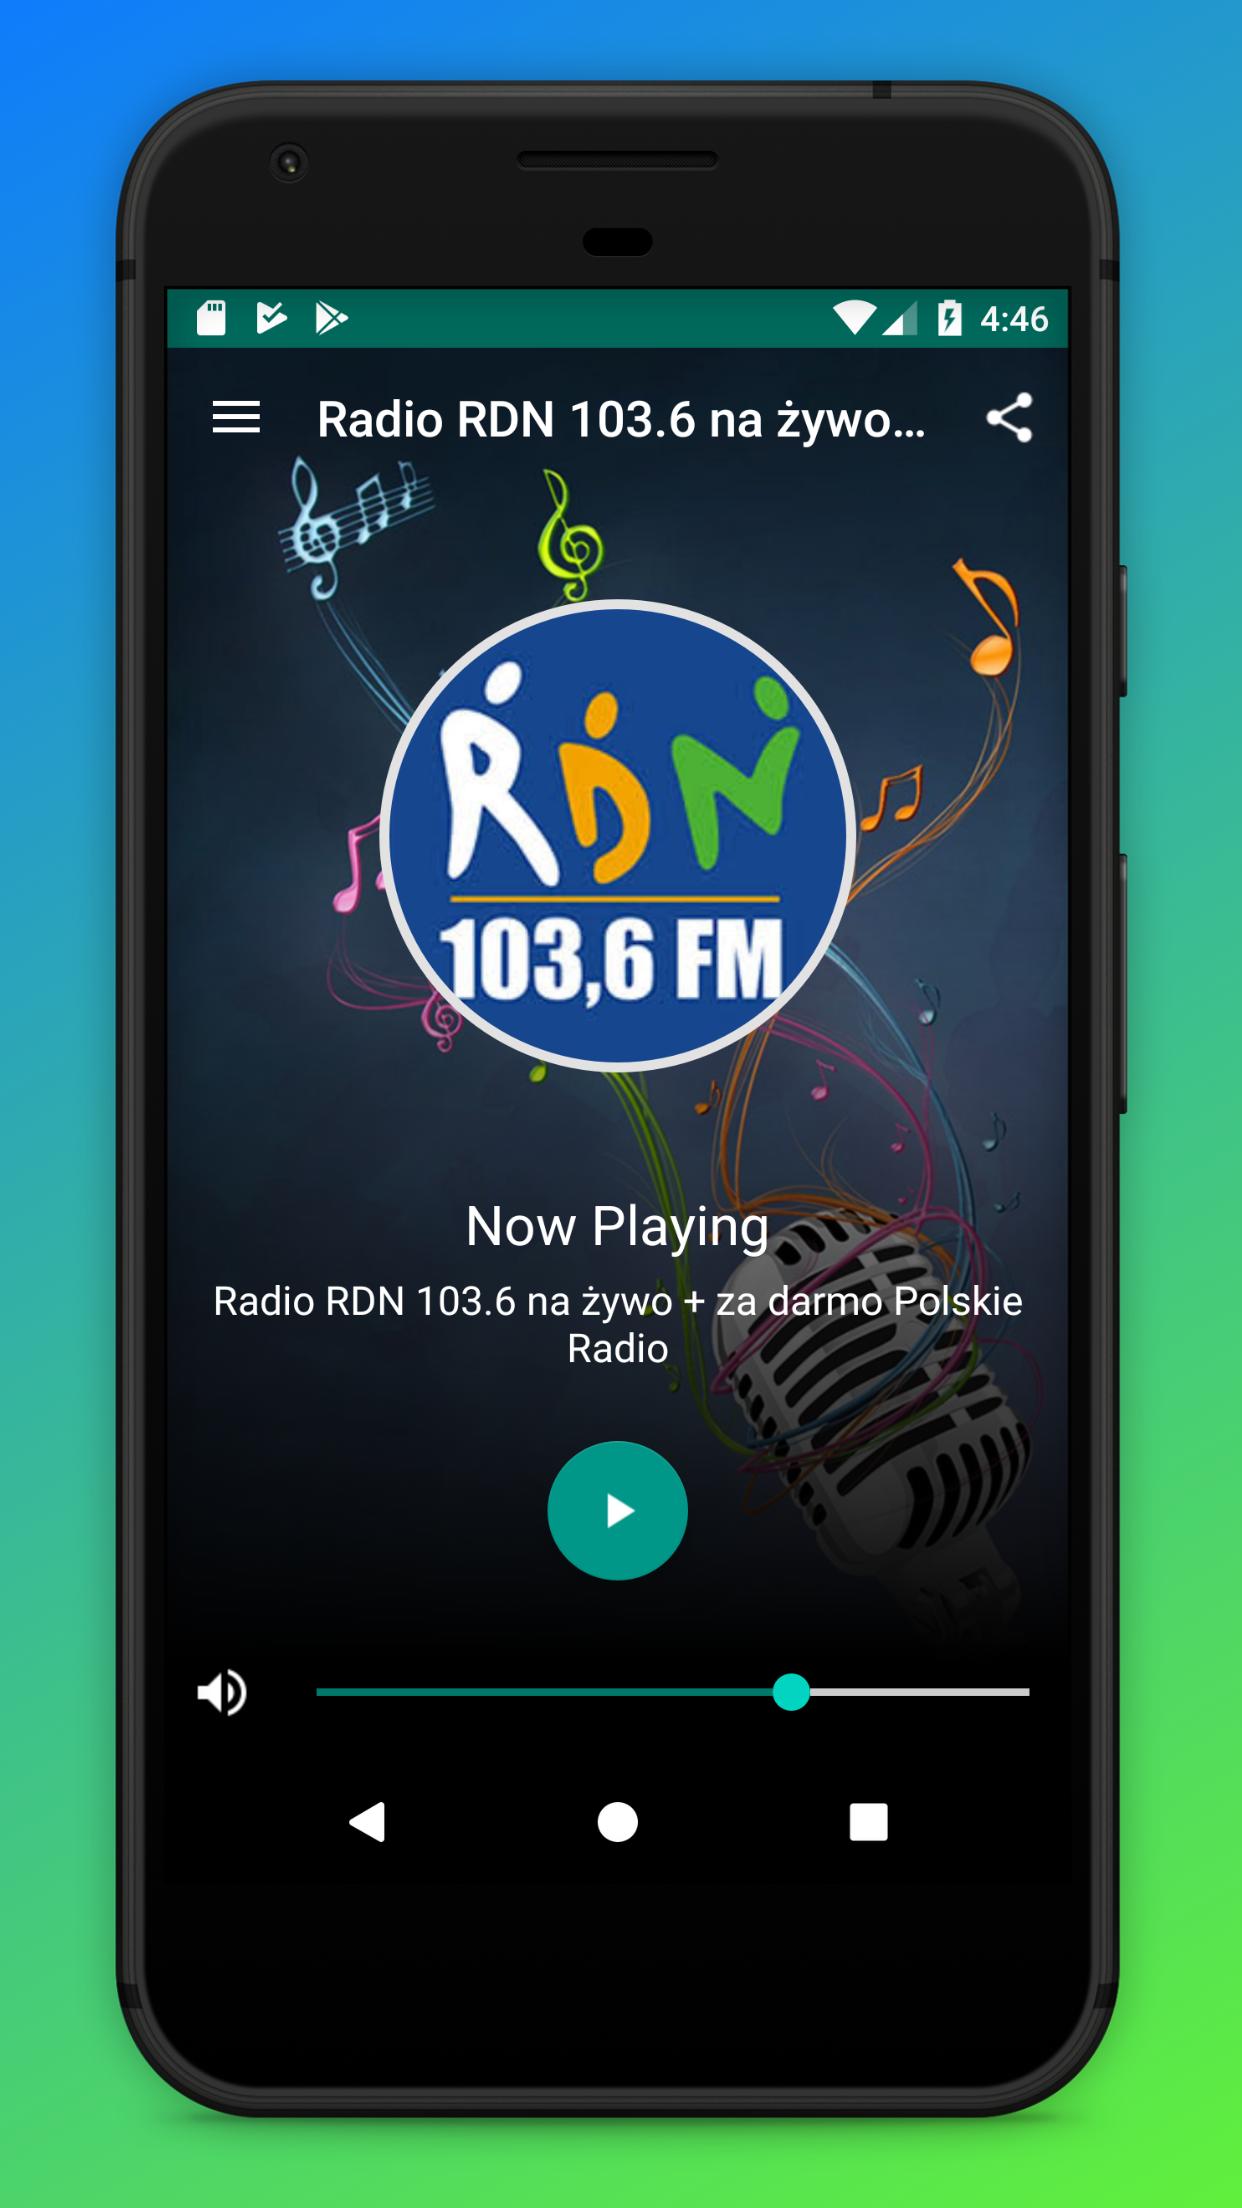 Radio RDN 103.6 na żywo + za darmo Polskie Radio for Android - APK Download